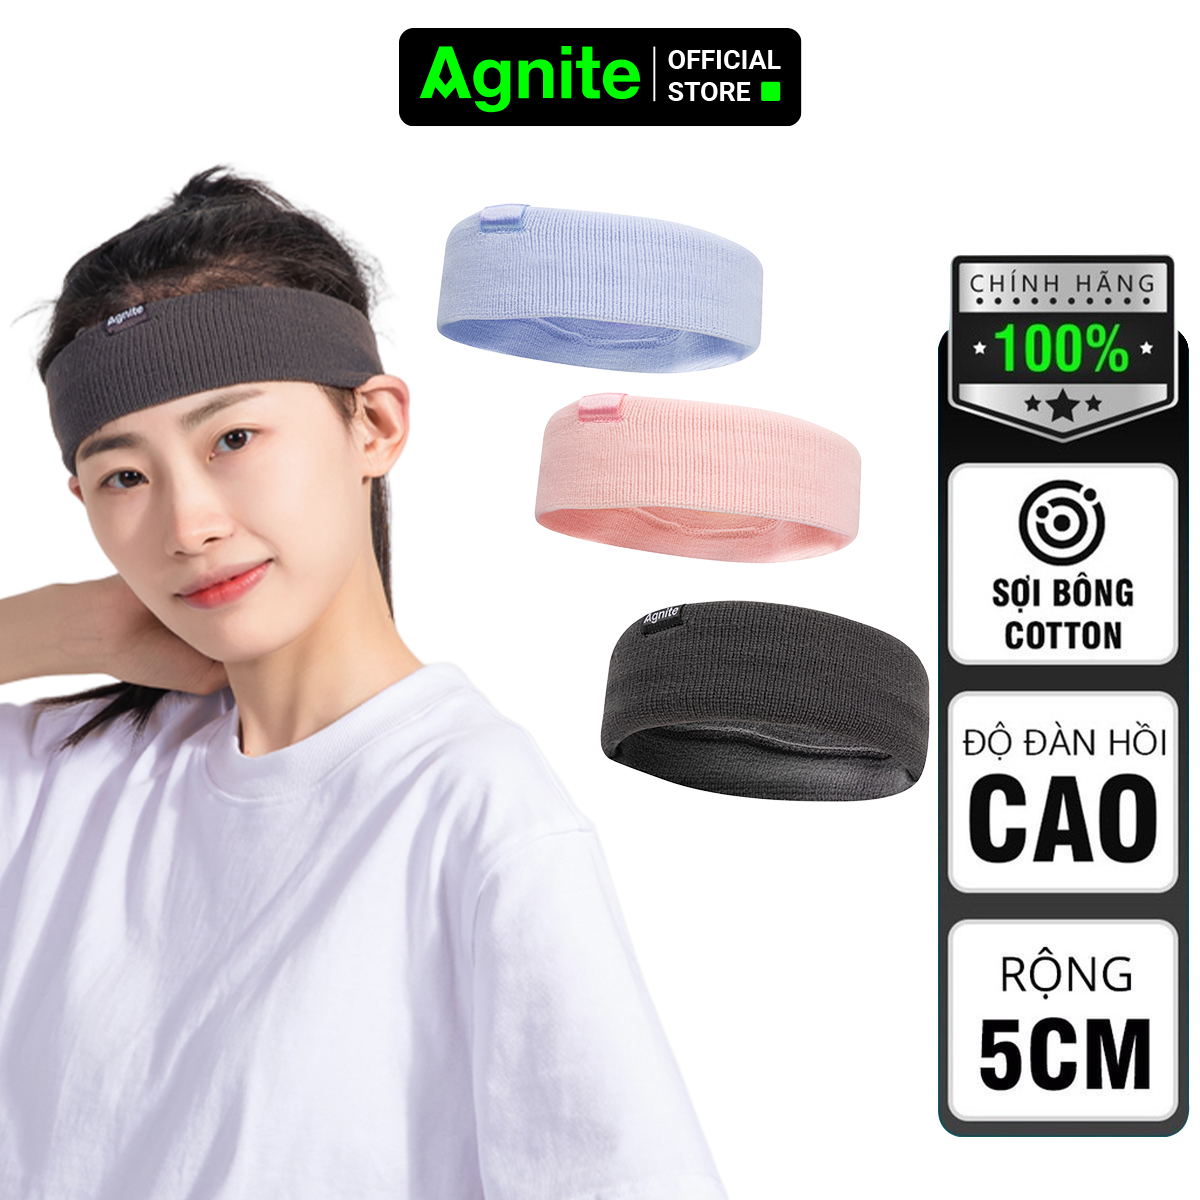 Hình ảnh Băng đô thể thao AGNITE chính hãng, headband vải co giãn tập gym, bóng rổ, chạy bộ, bóng chuyền, cầu lông mã FL101